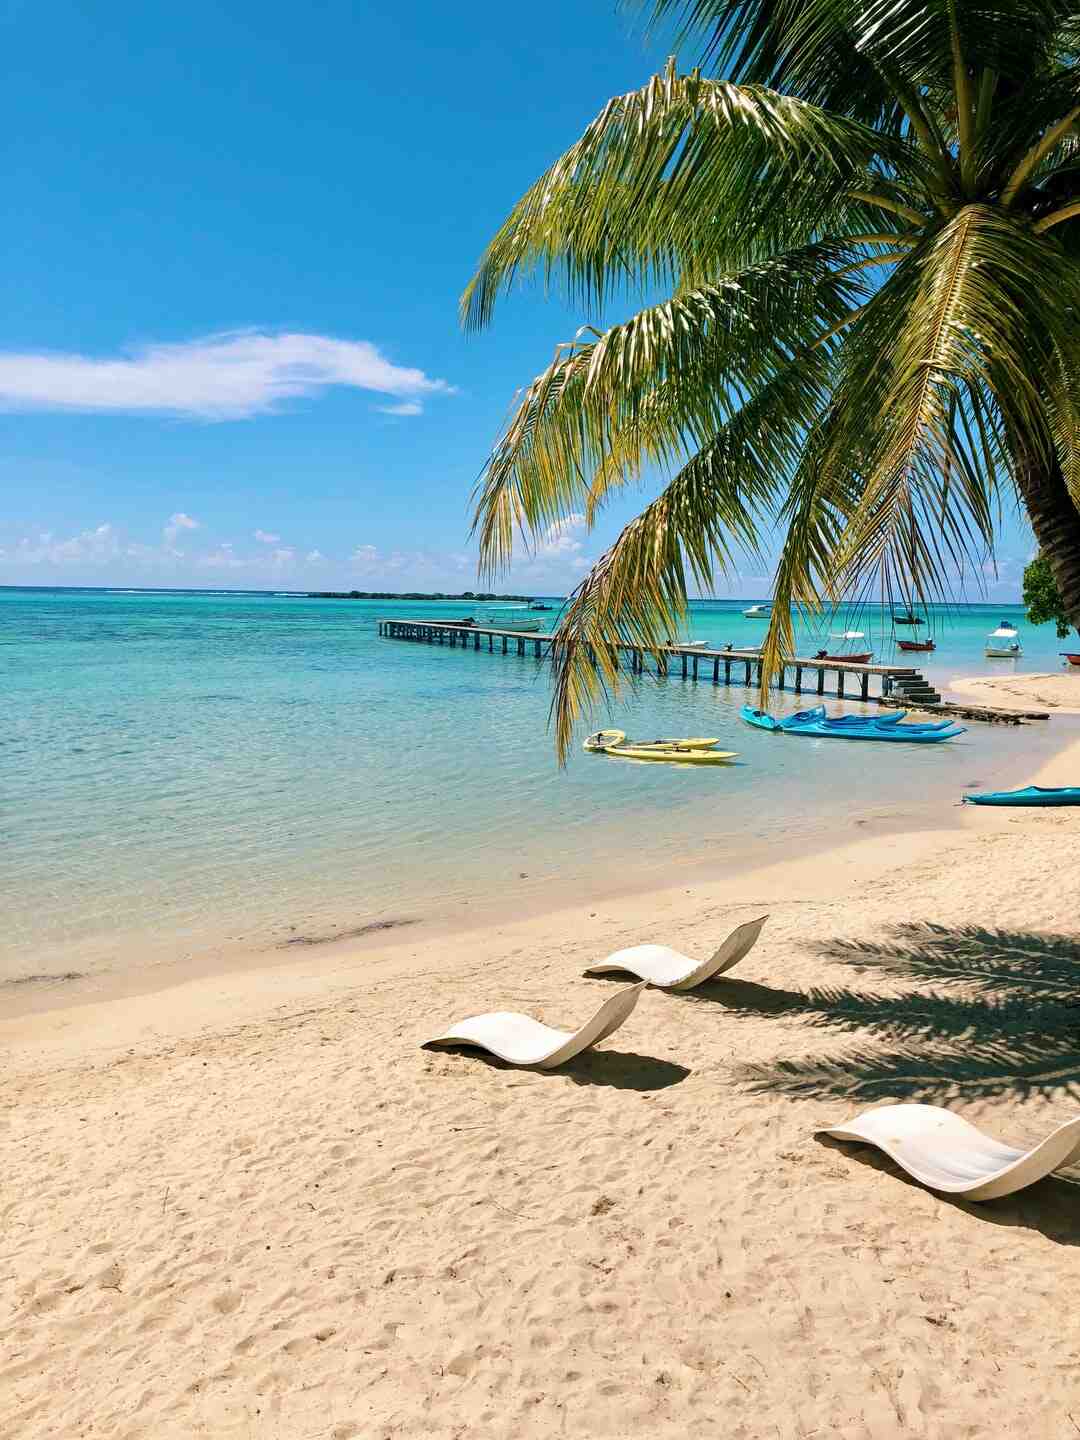 أين الشواطئ ذات الرمال البيضاء في جزر الكناري؟